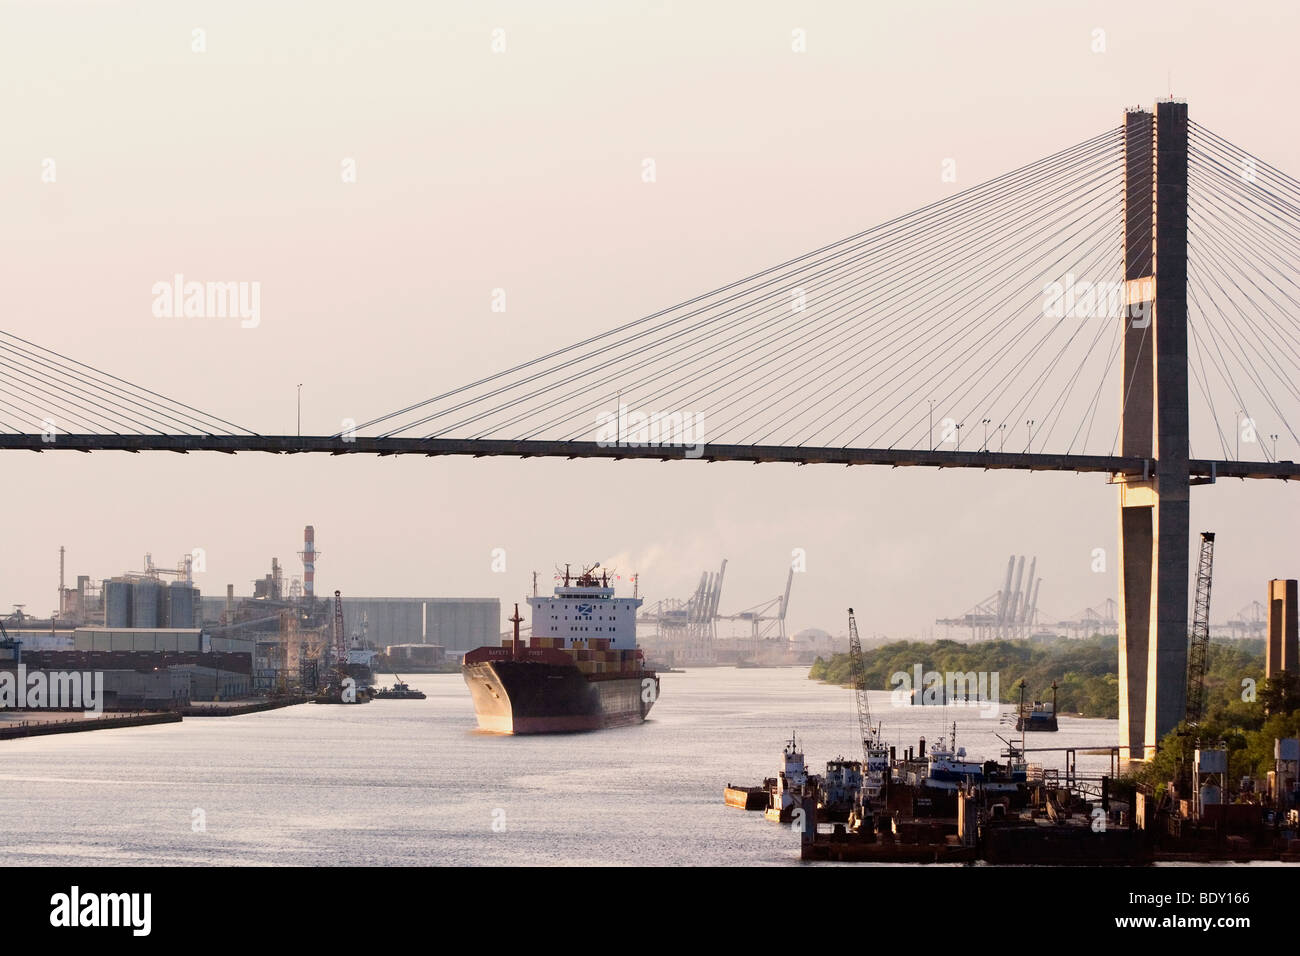 Le SMC Colombie container ship navigue sous le Talmadge Memorial Bridge sur la rivière Savannah Banque D'Images